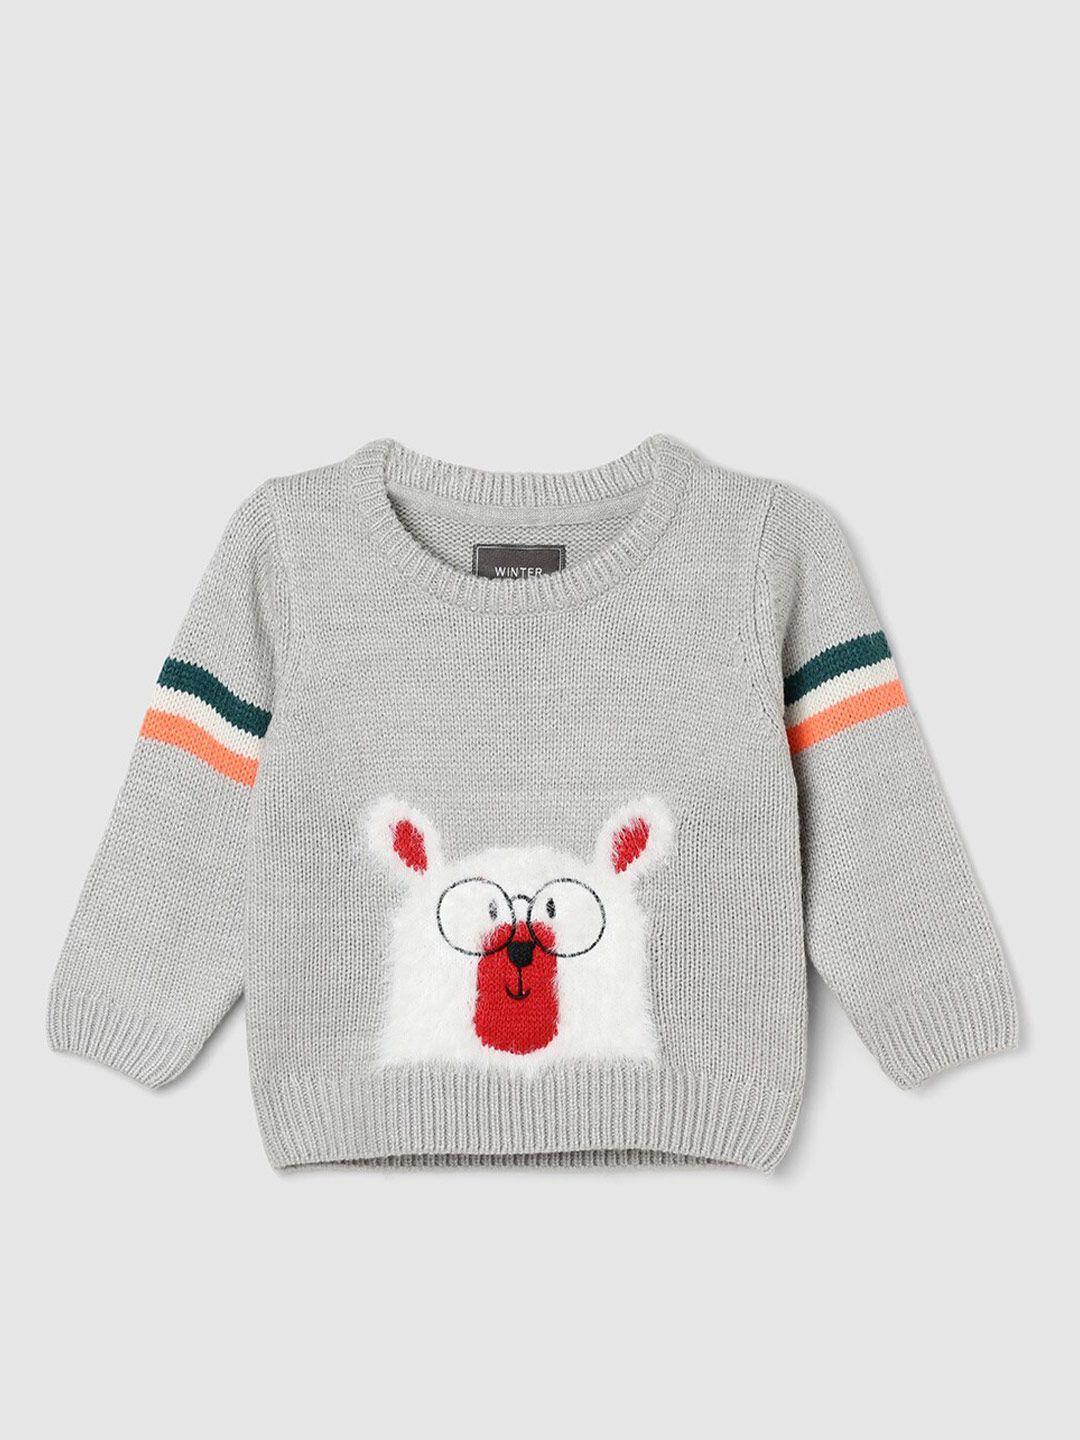 max boys graphic self design pullover sweater